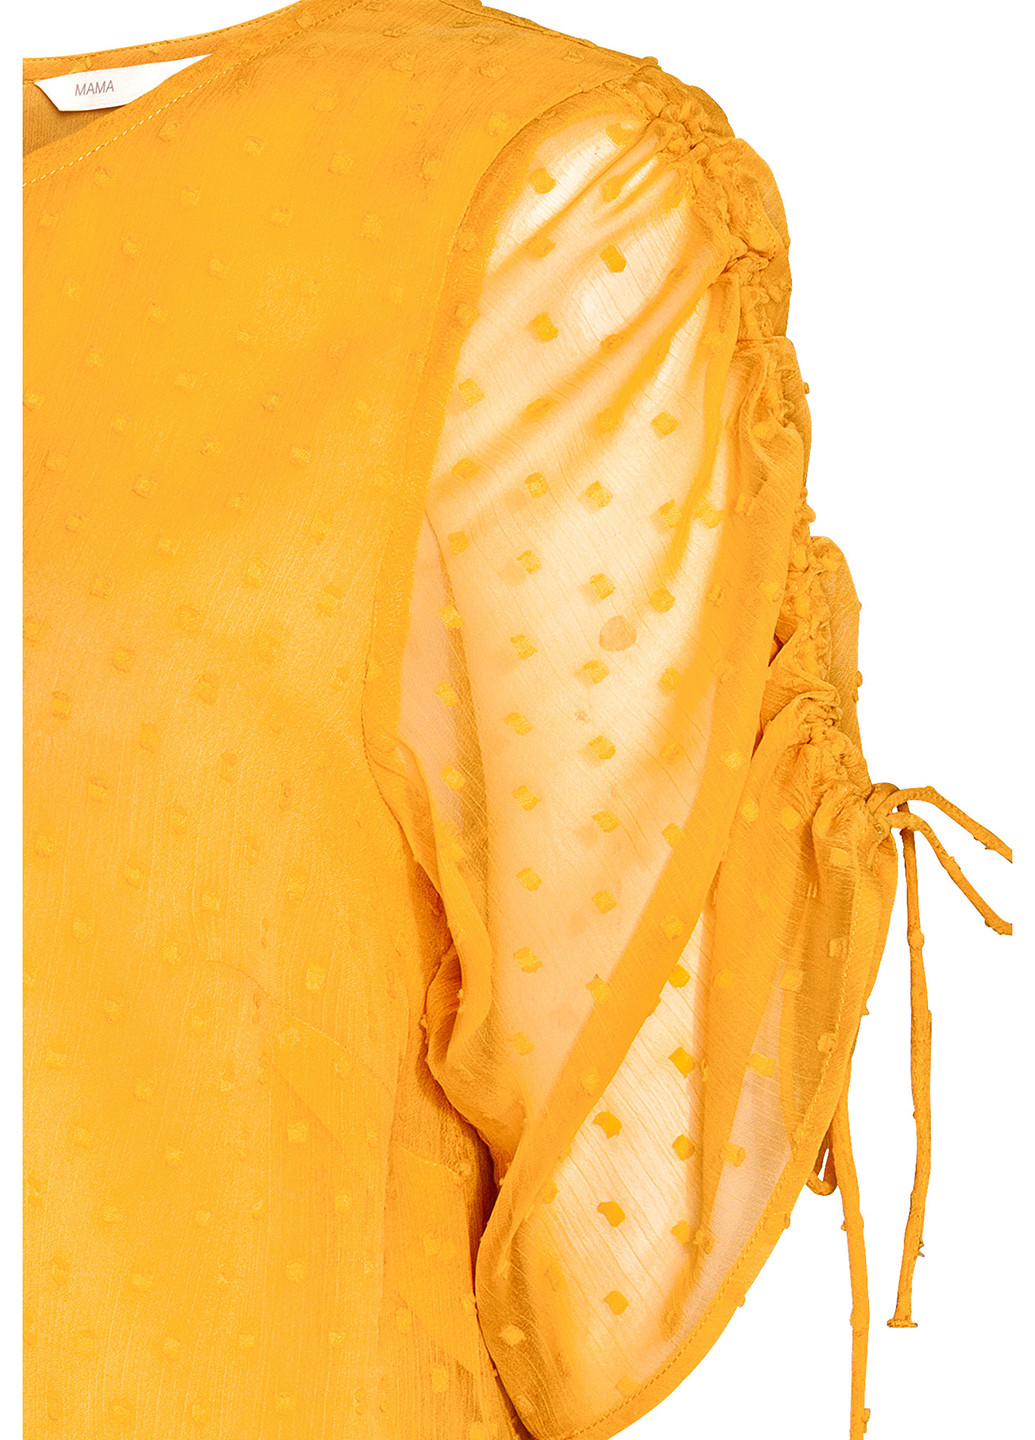 Желтая летняя блуза для беременных H&M